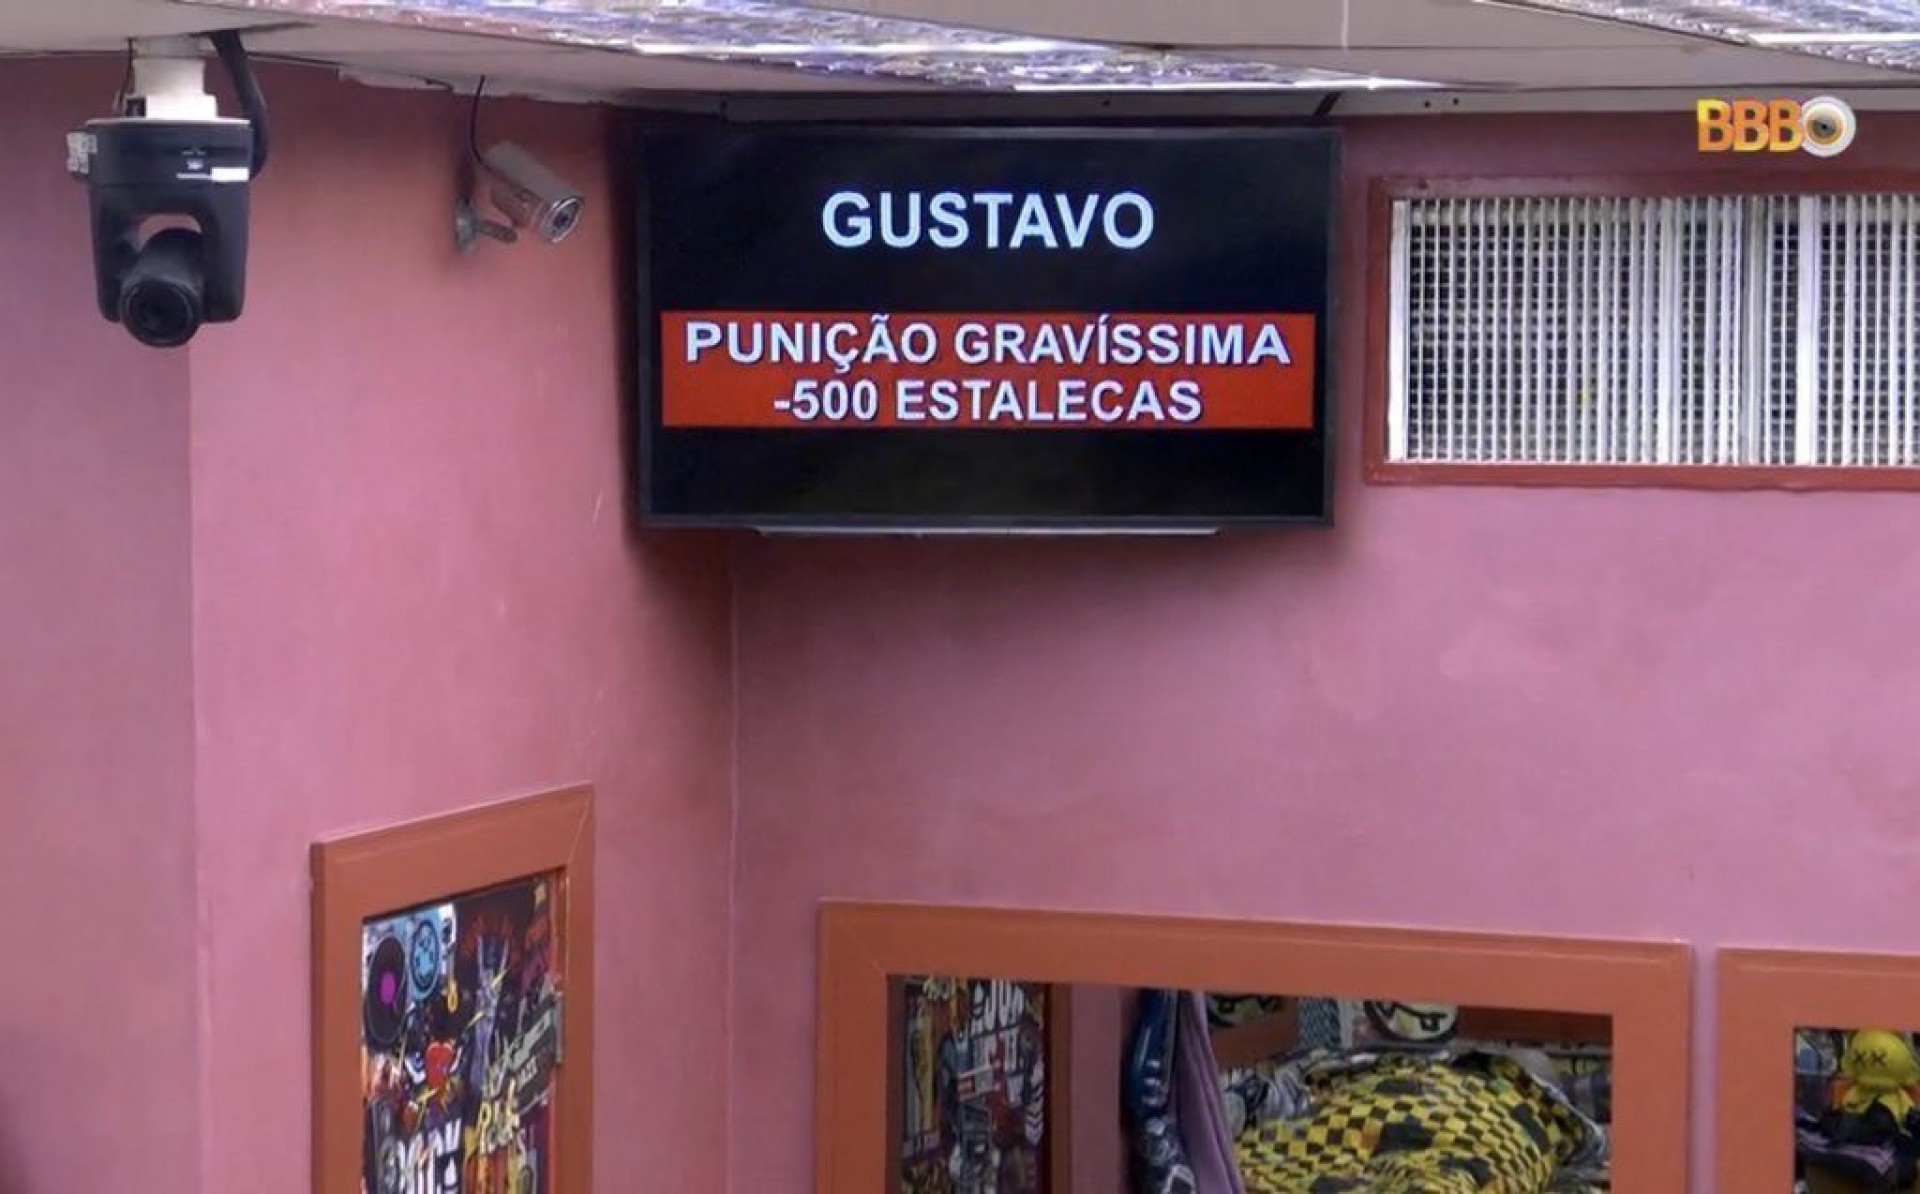  - Reprodução/Globo